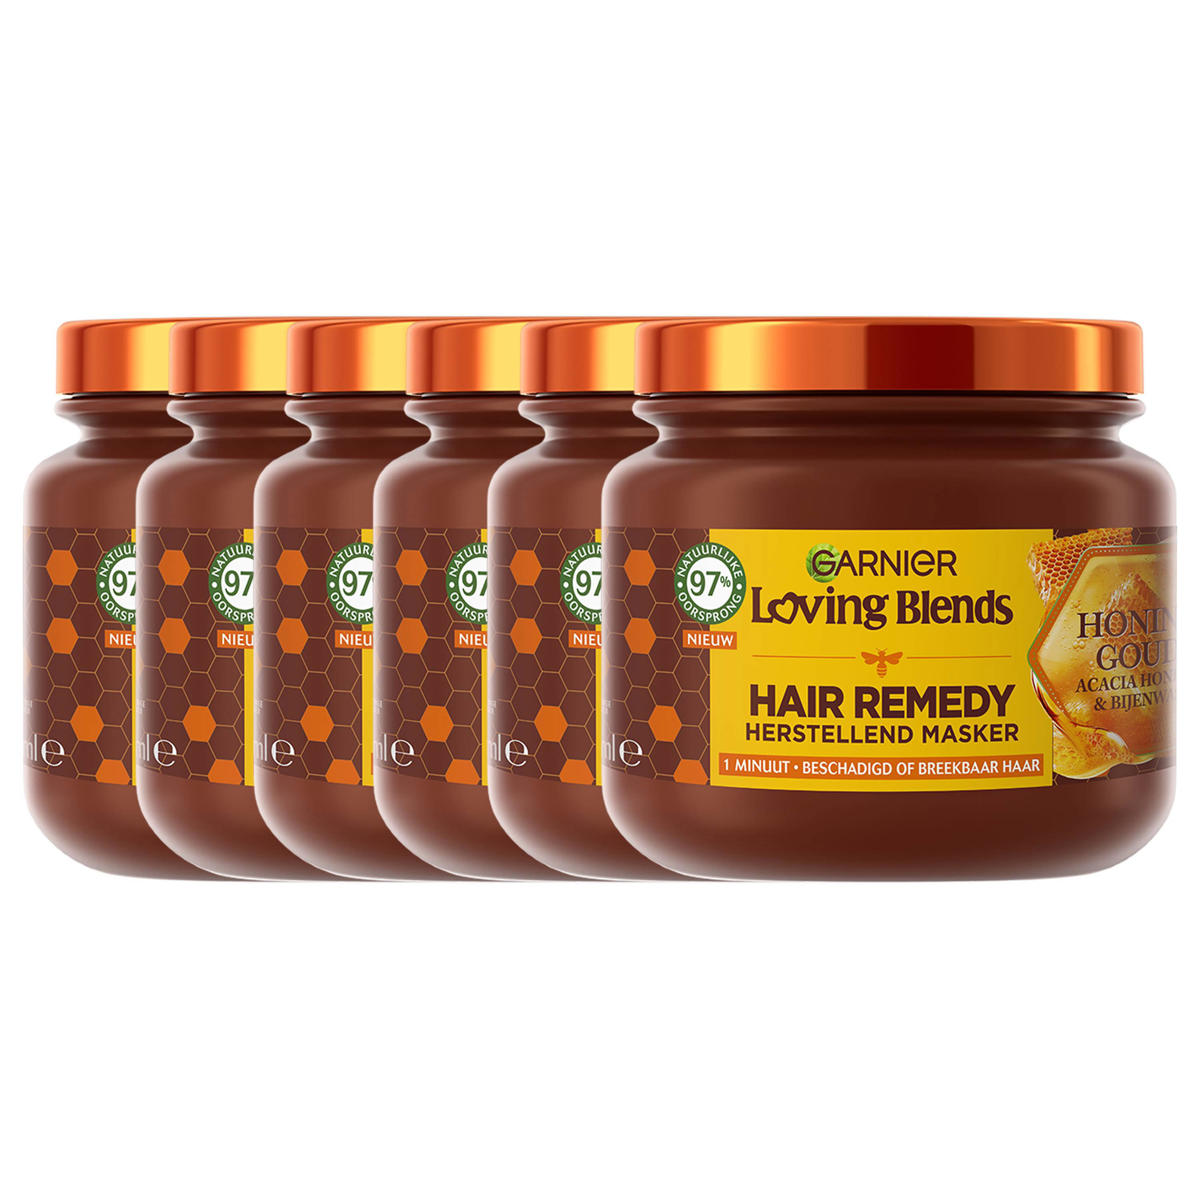 doe niet afschaffen verdwijnen Garnier Loving Blends Honing Goud haarmasker - 340 ml - 6 stuks -  voordeelverpakking | wehkamp